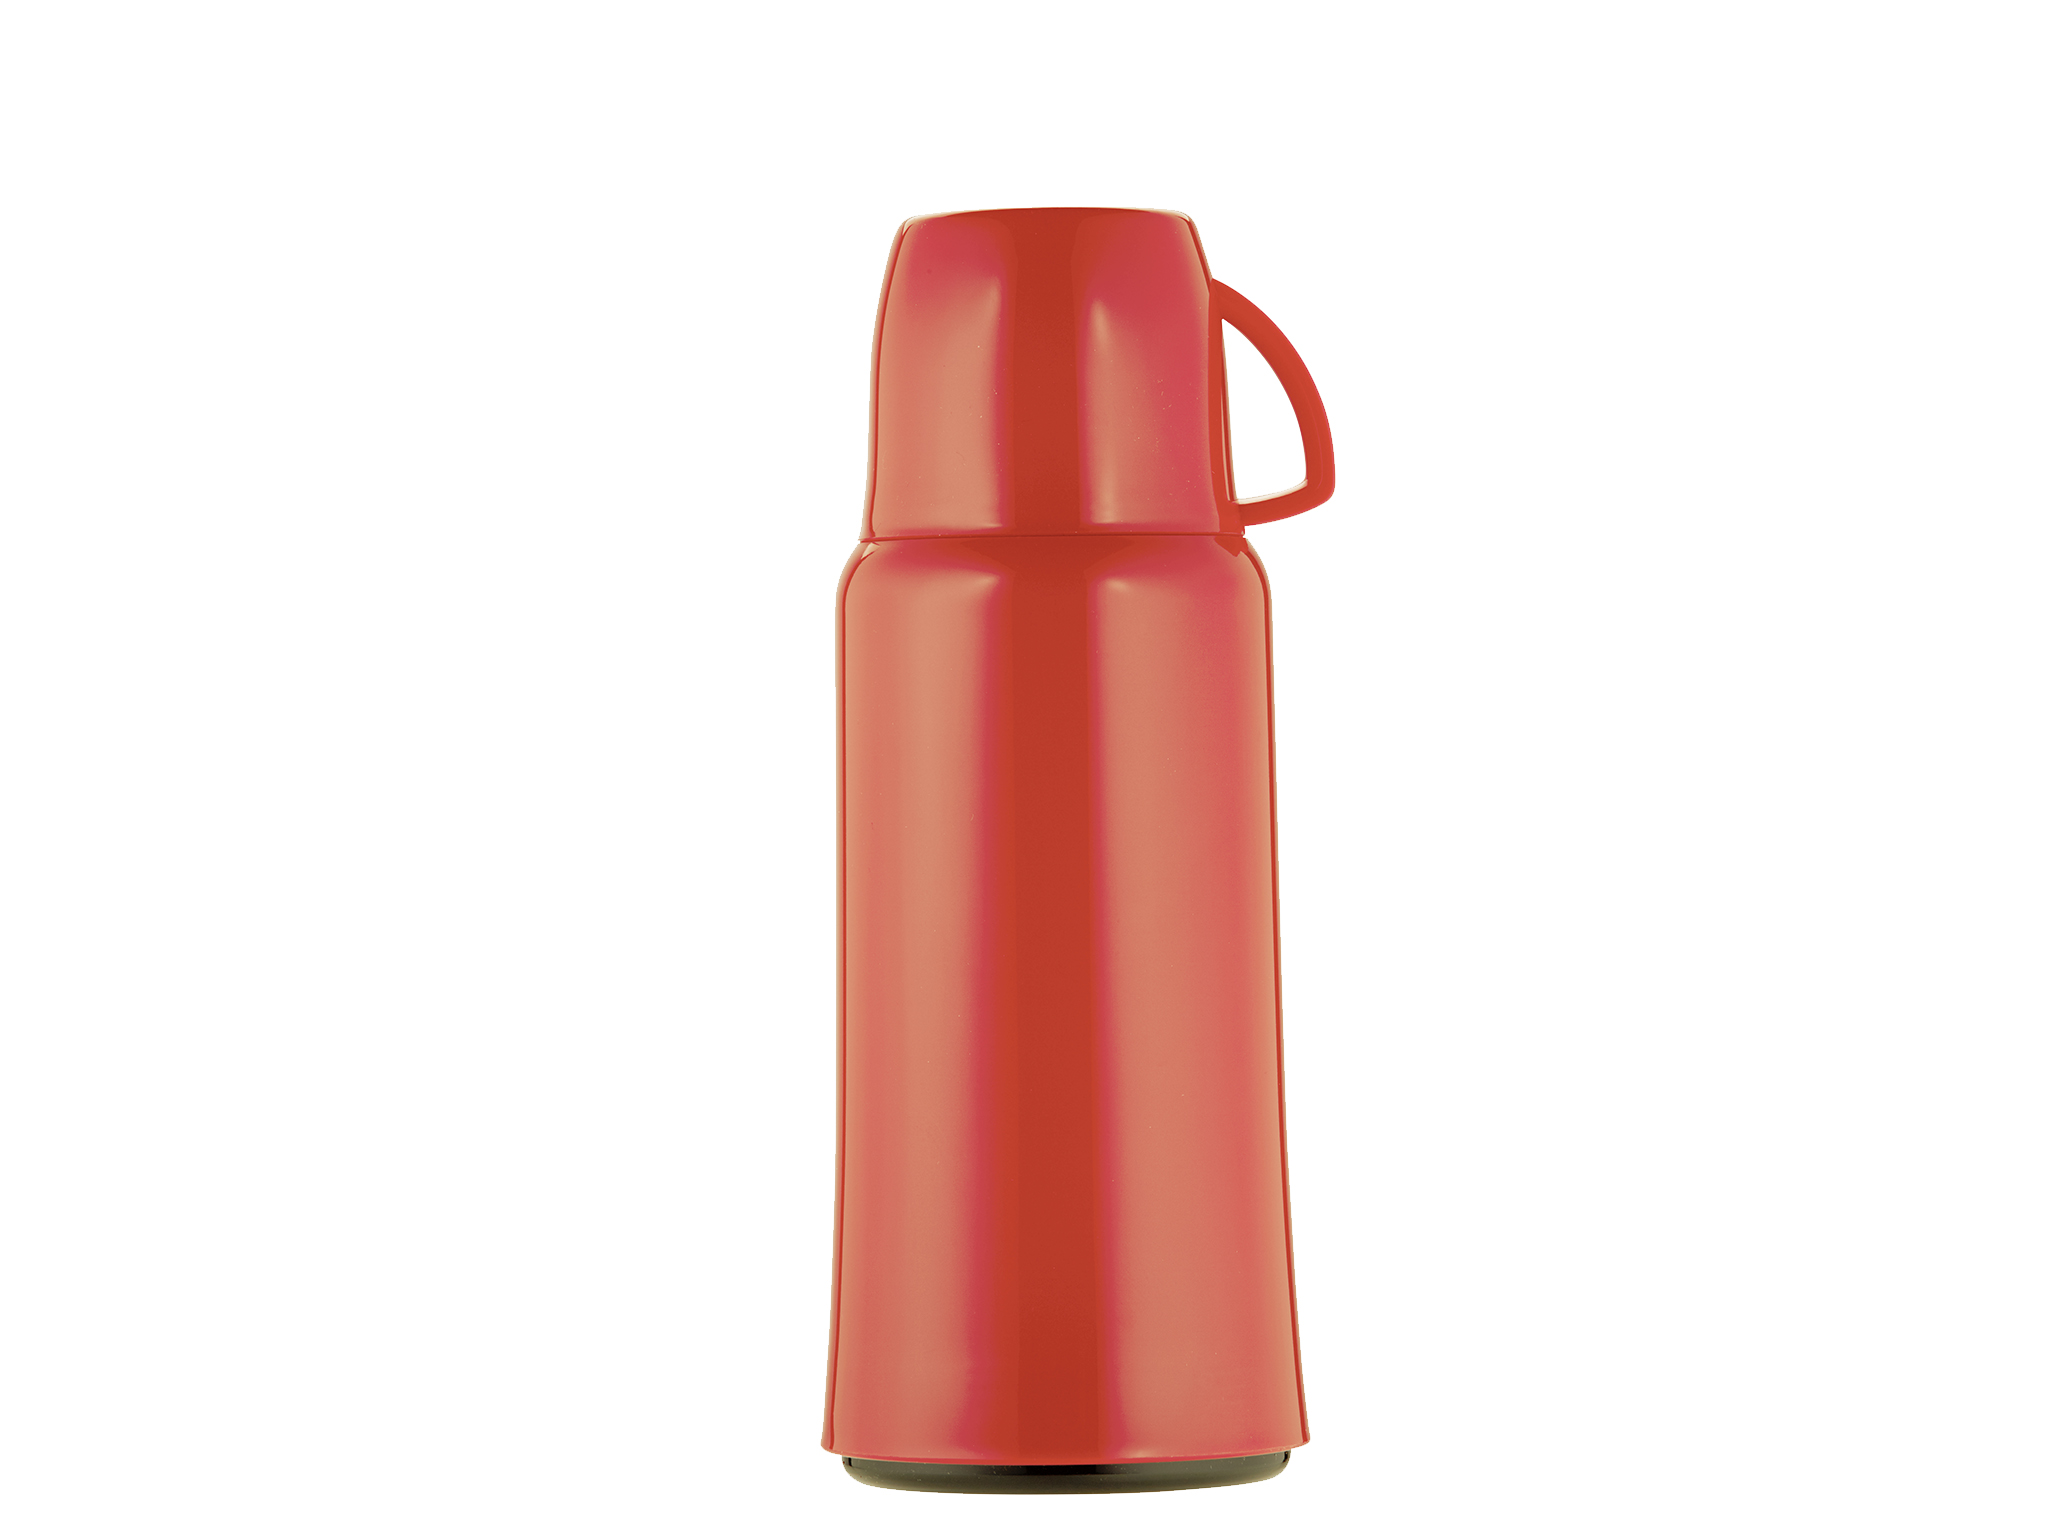 5444-011 - Vacuum flask red 1.0 L ELEGANCE - Helios